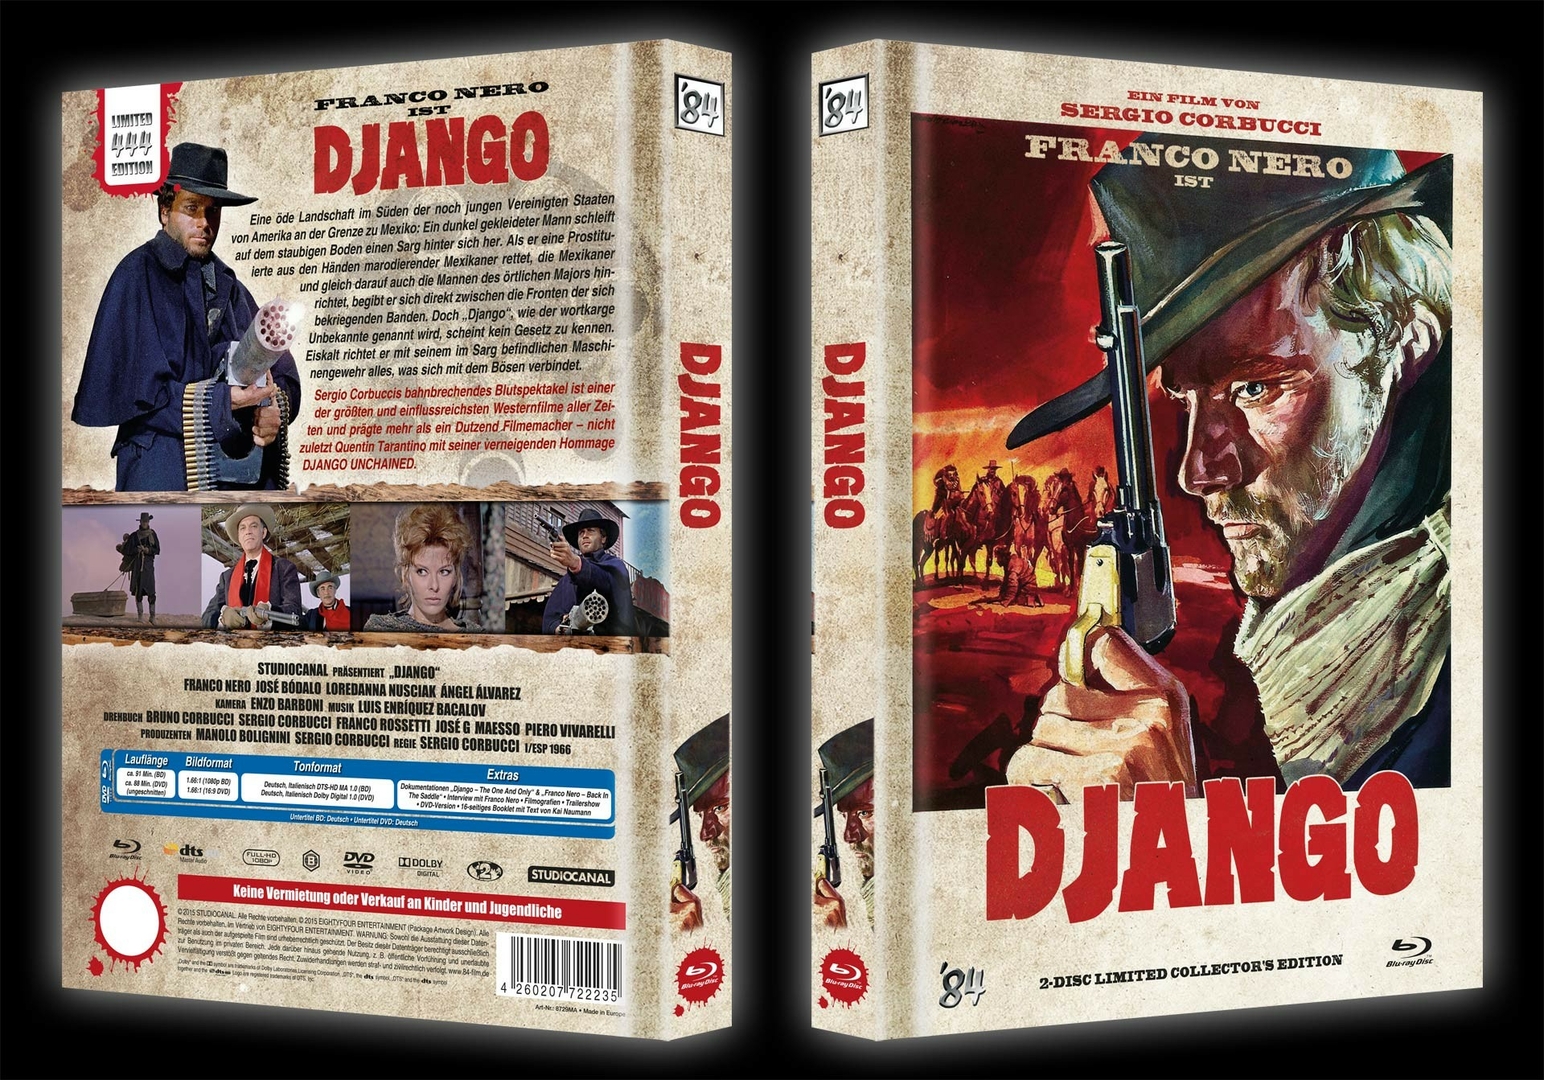 django-mediabook-cover-a-komplett.jpg